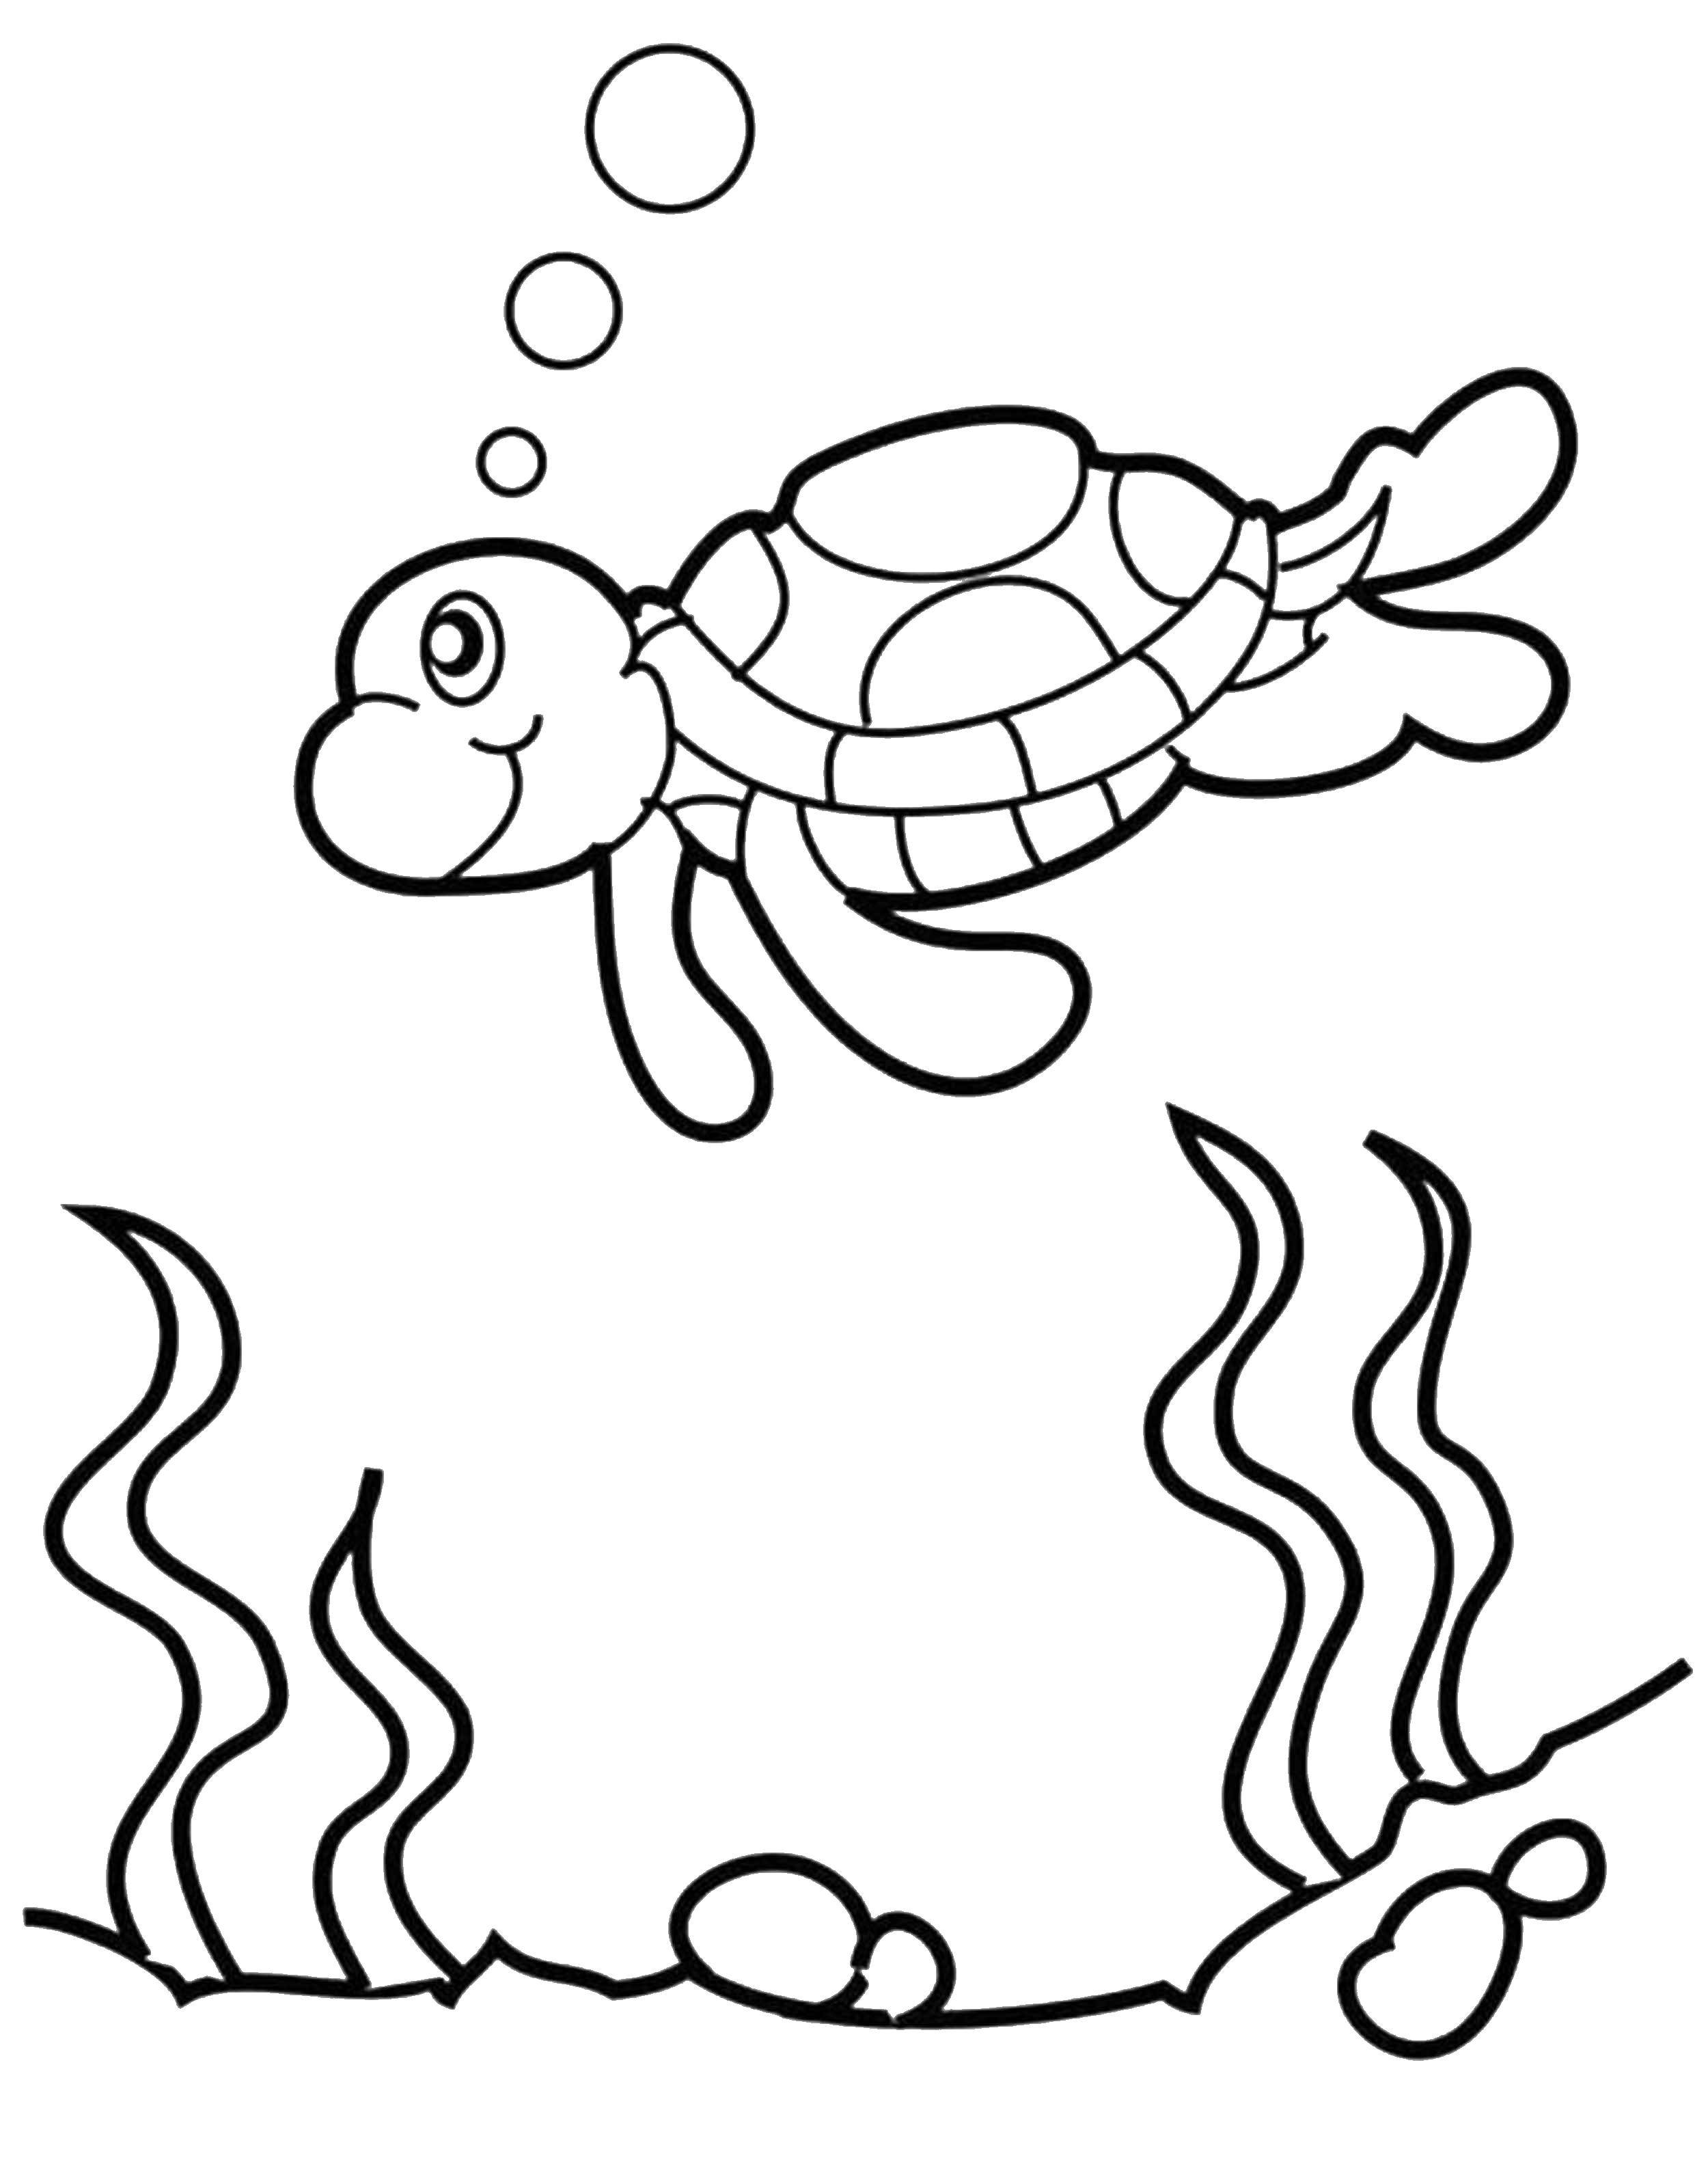 Название: Раскраска Морская черепашка пускает пузырики. Категория: детеныши животных. Теги: Рептилия, черепаха.